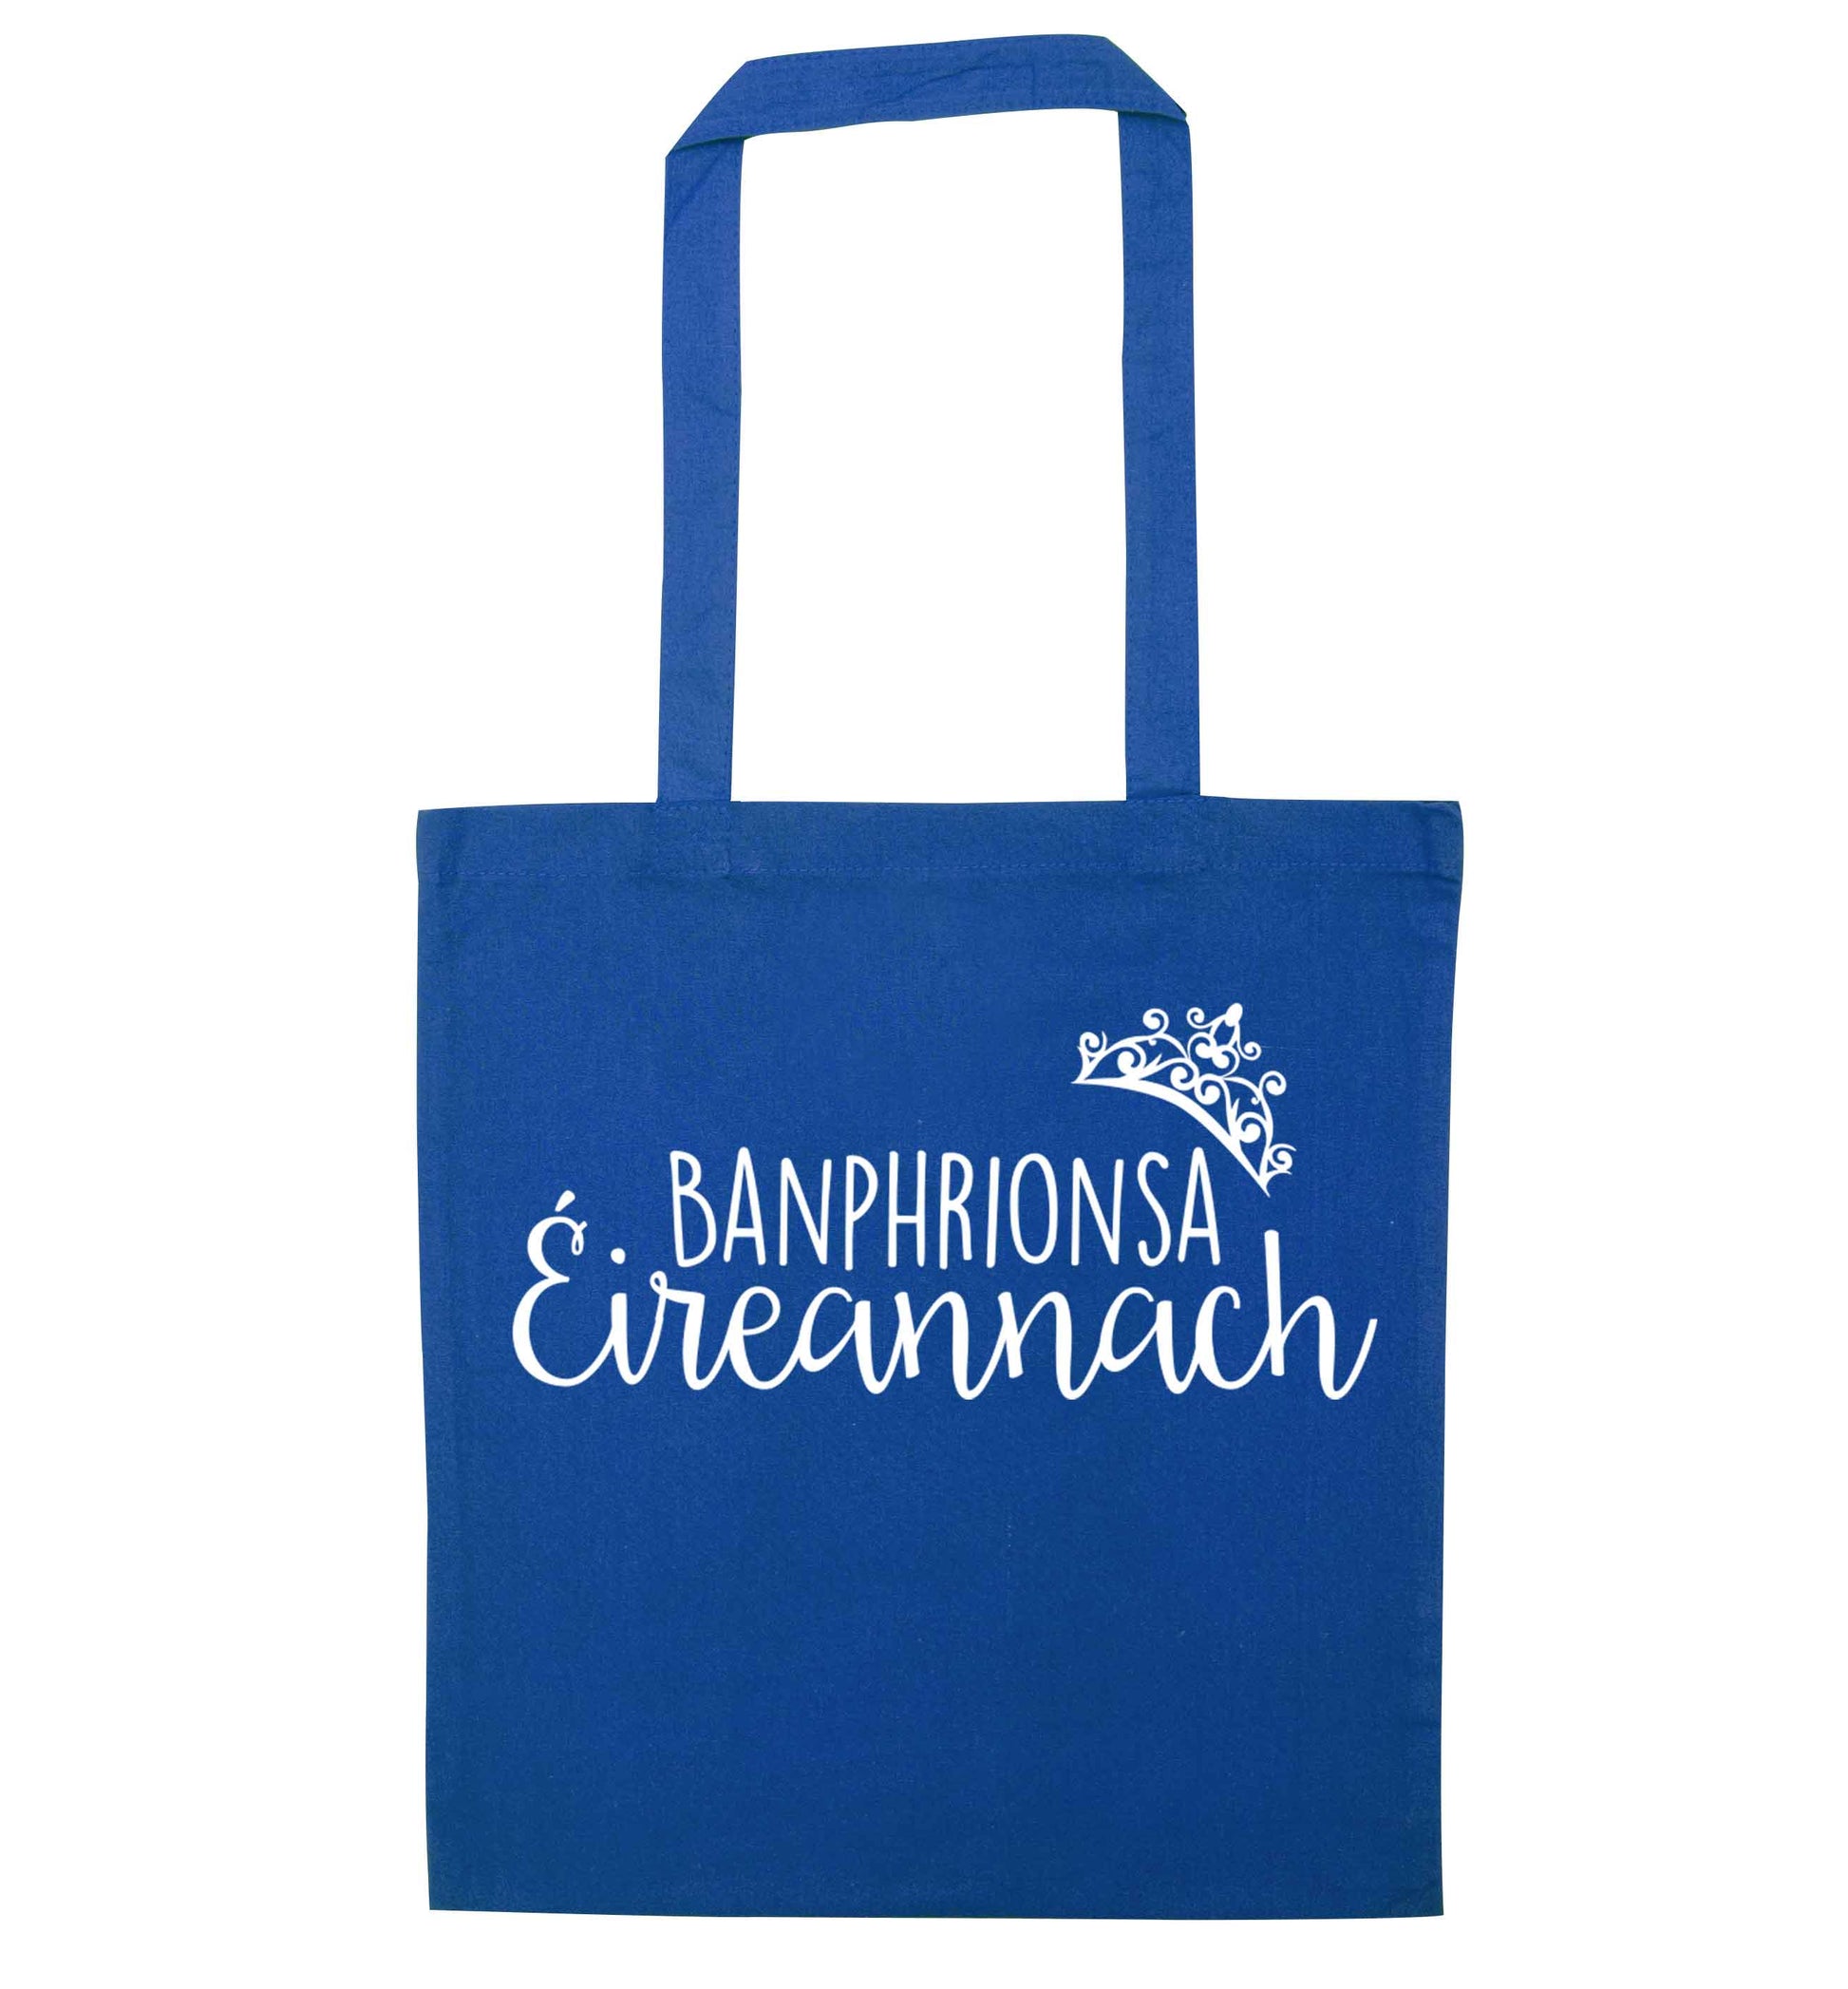 Banphrionsa eireannach blue tote bag